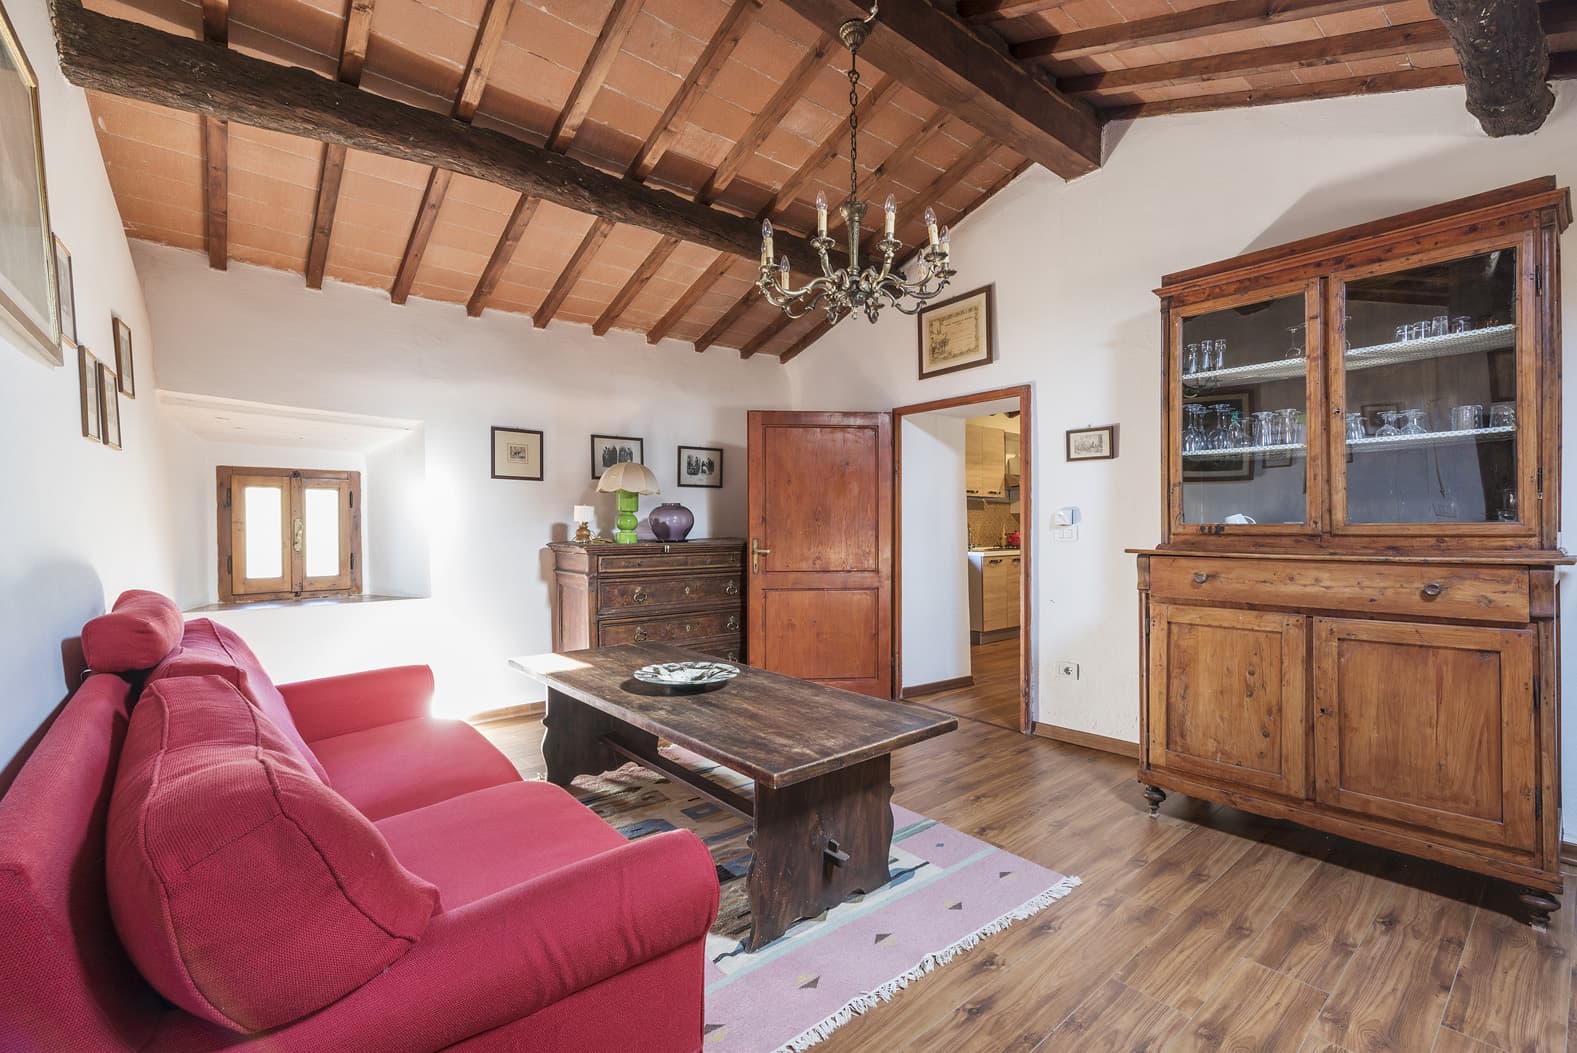  Bedroom Villa For Sale Borgo In Chianti Lp0793 1ea8f3d474a51a00.jpg